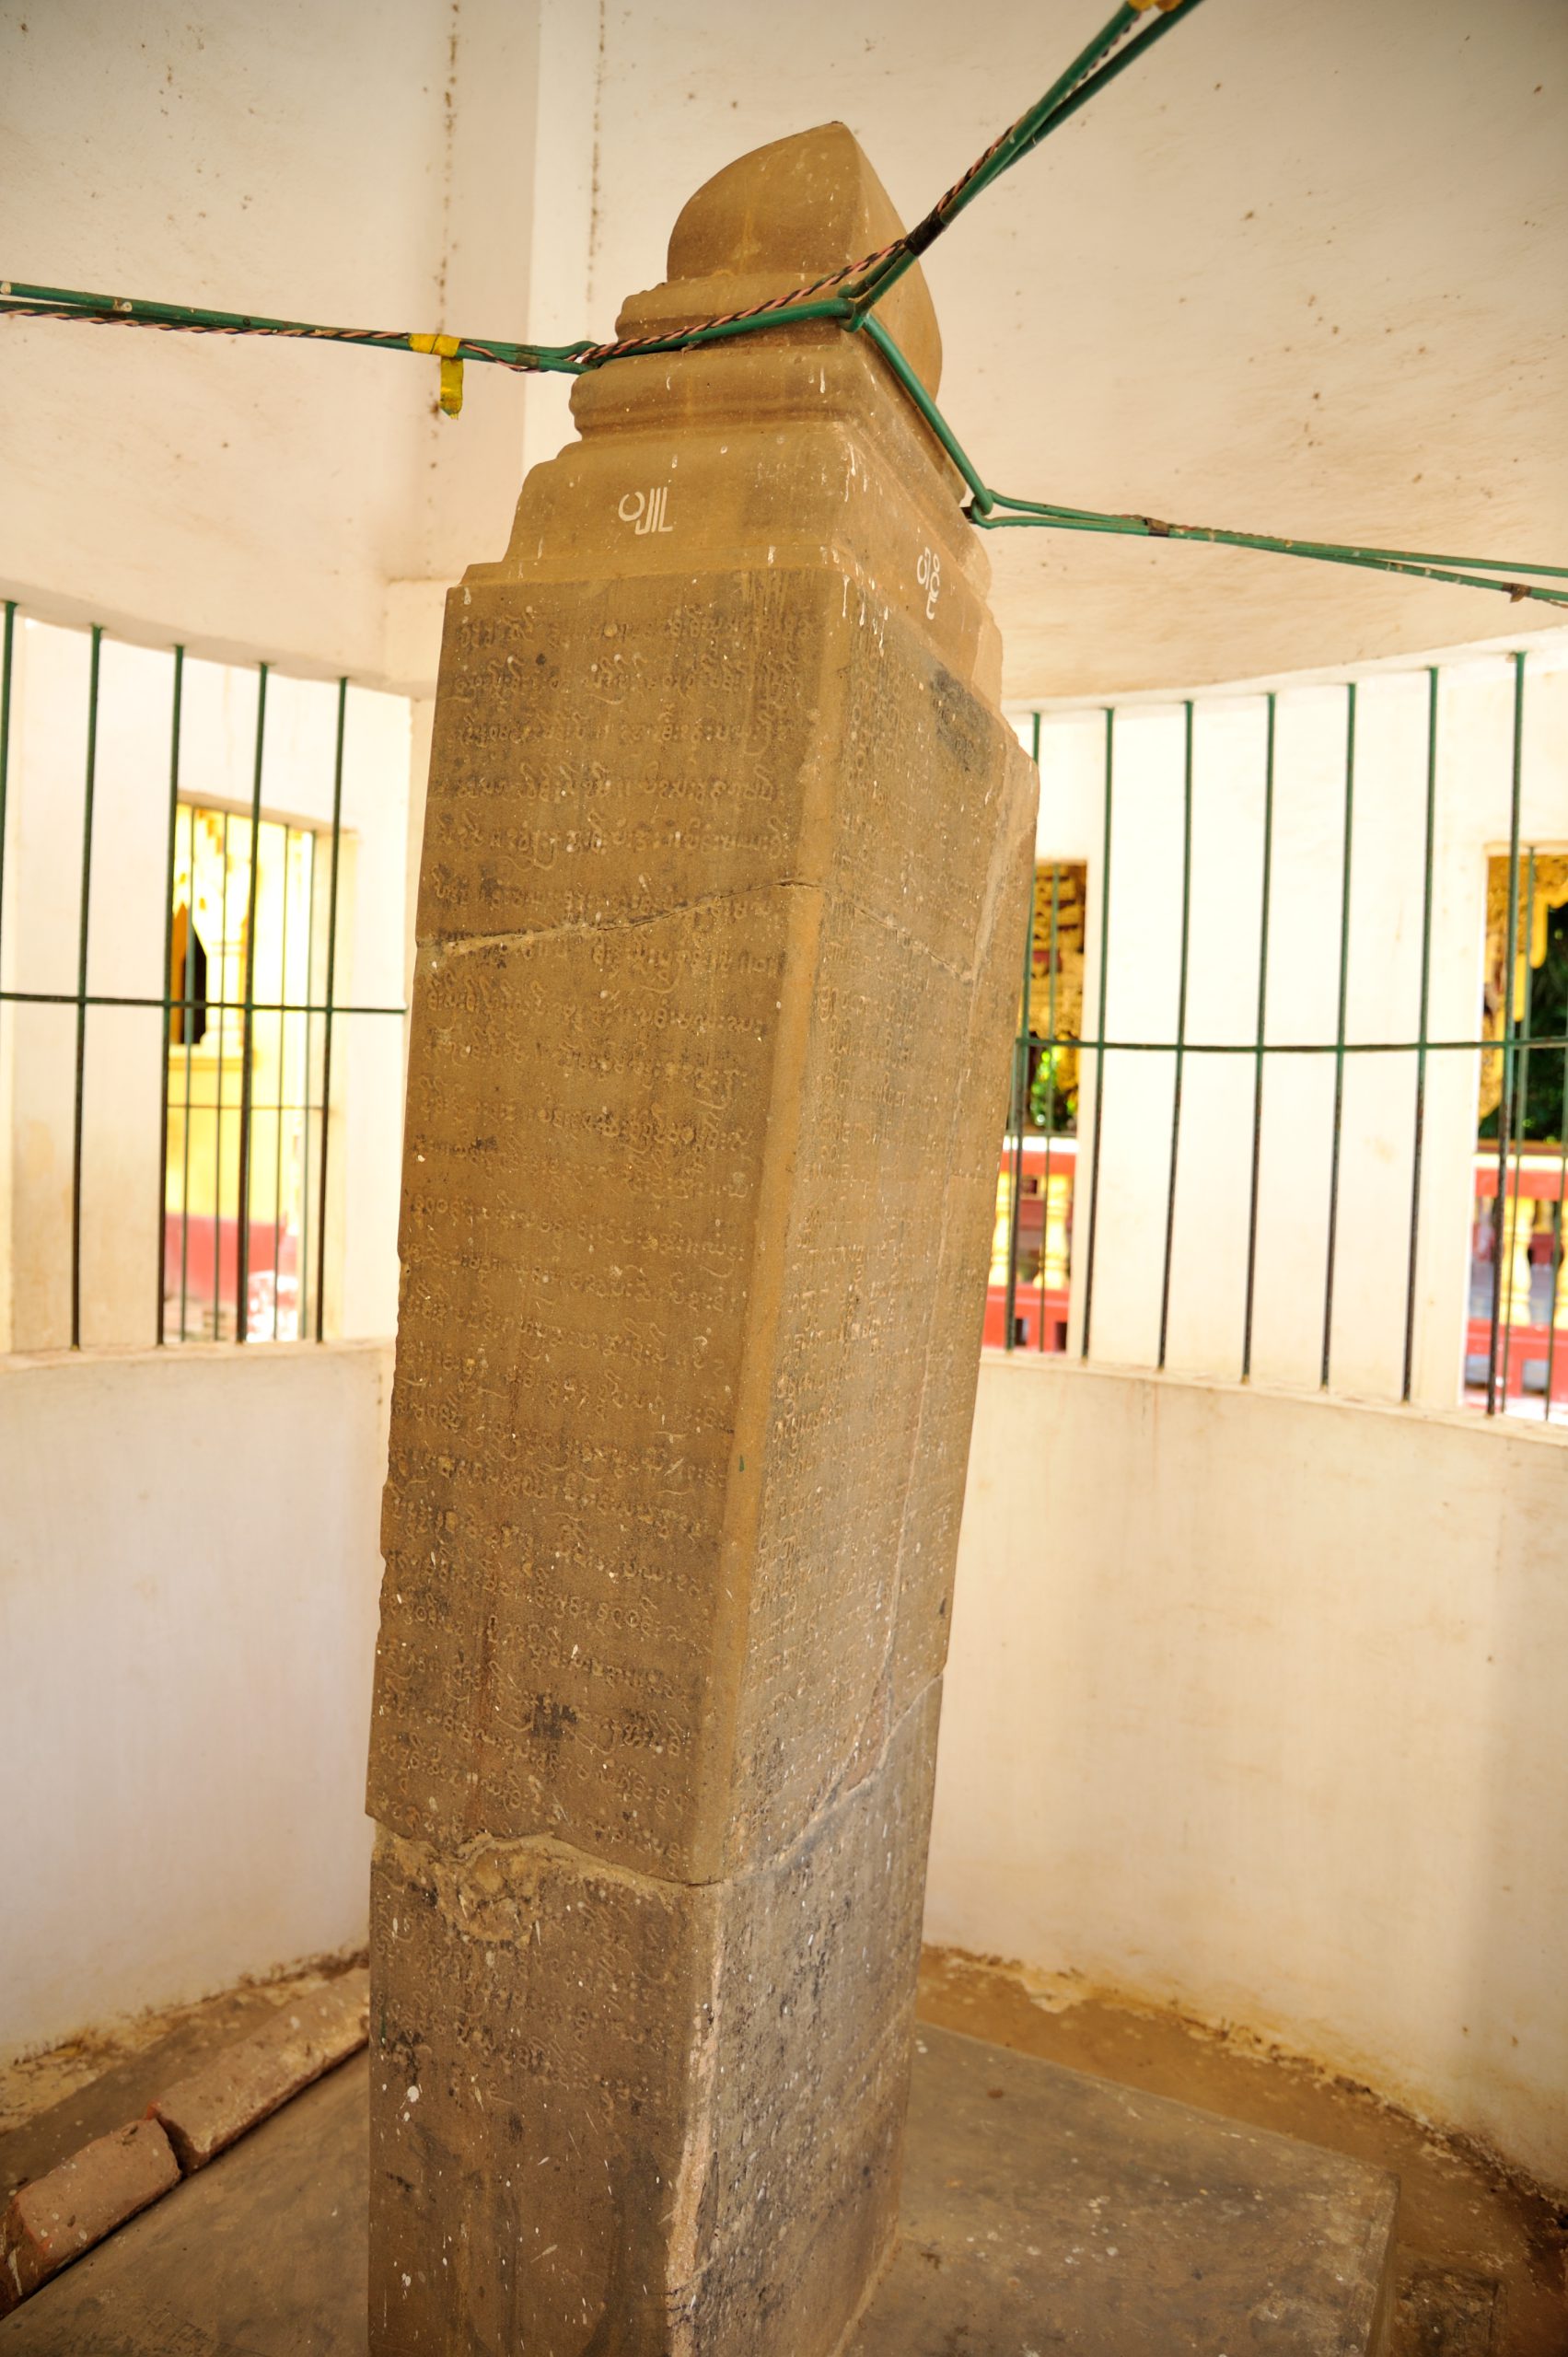 バガンのミャーゼディ寺院に残る碑文。4面にピュー語、ビルマ語、モン語、パーリ語が刻まれ、ユネスコの世界記憶遺産に登録